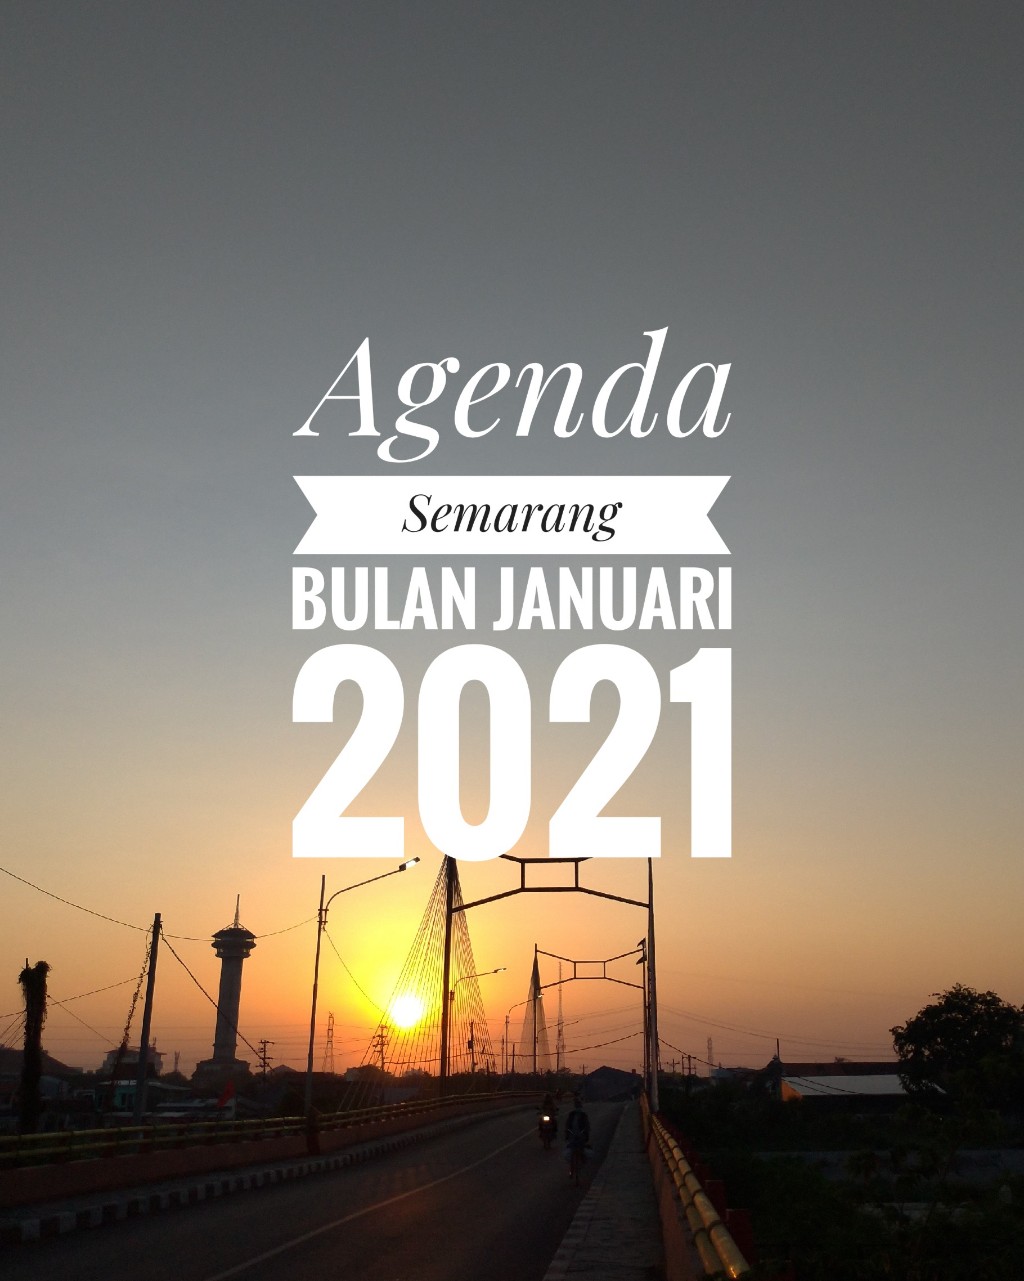 Agenda semarang bulan januari 2021